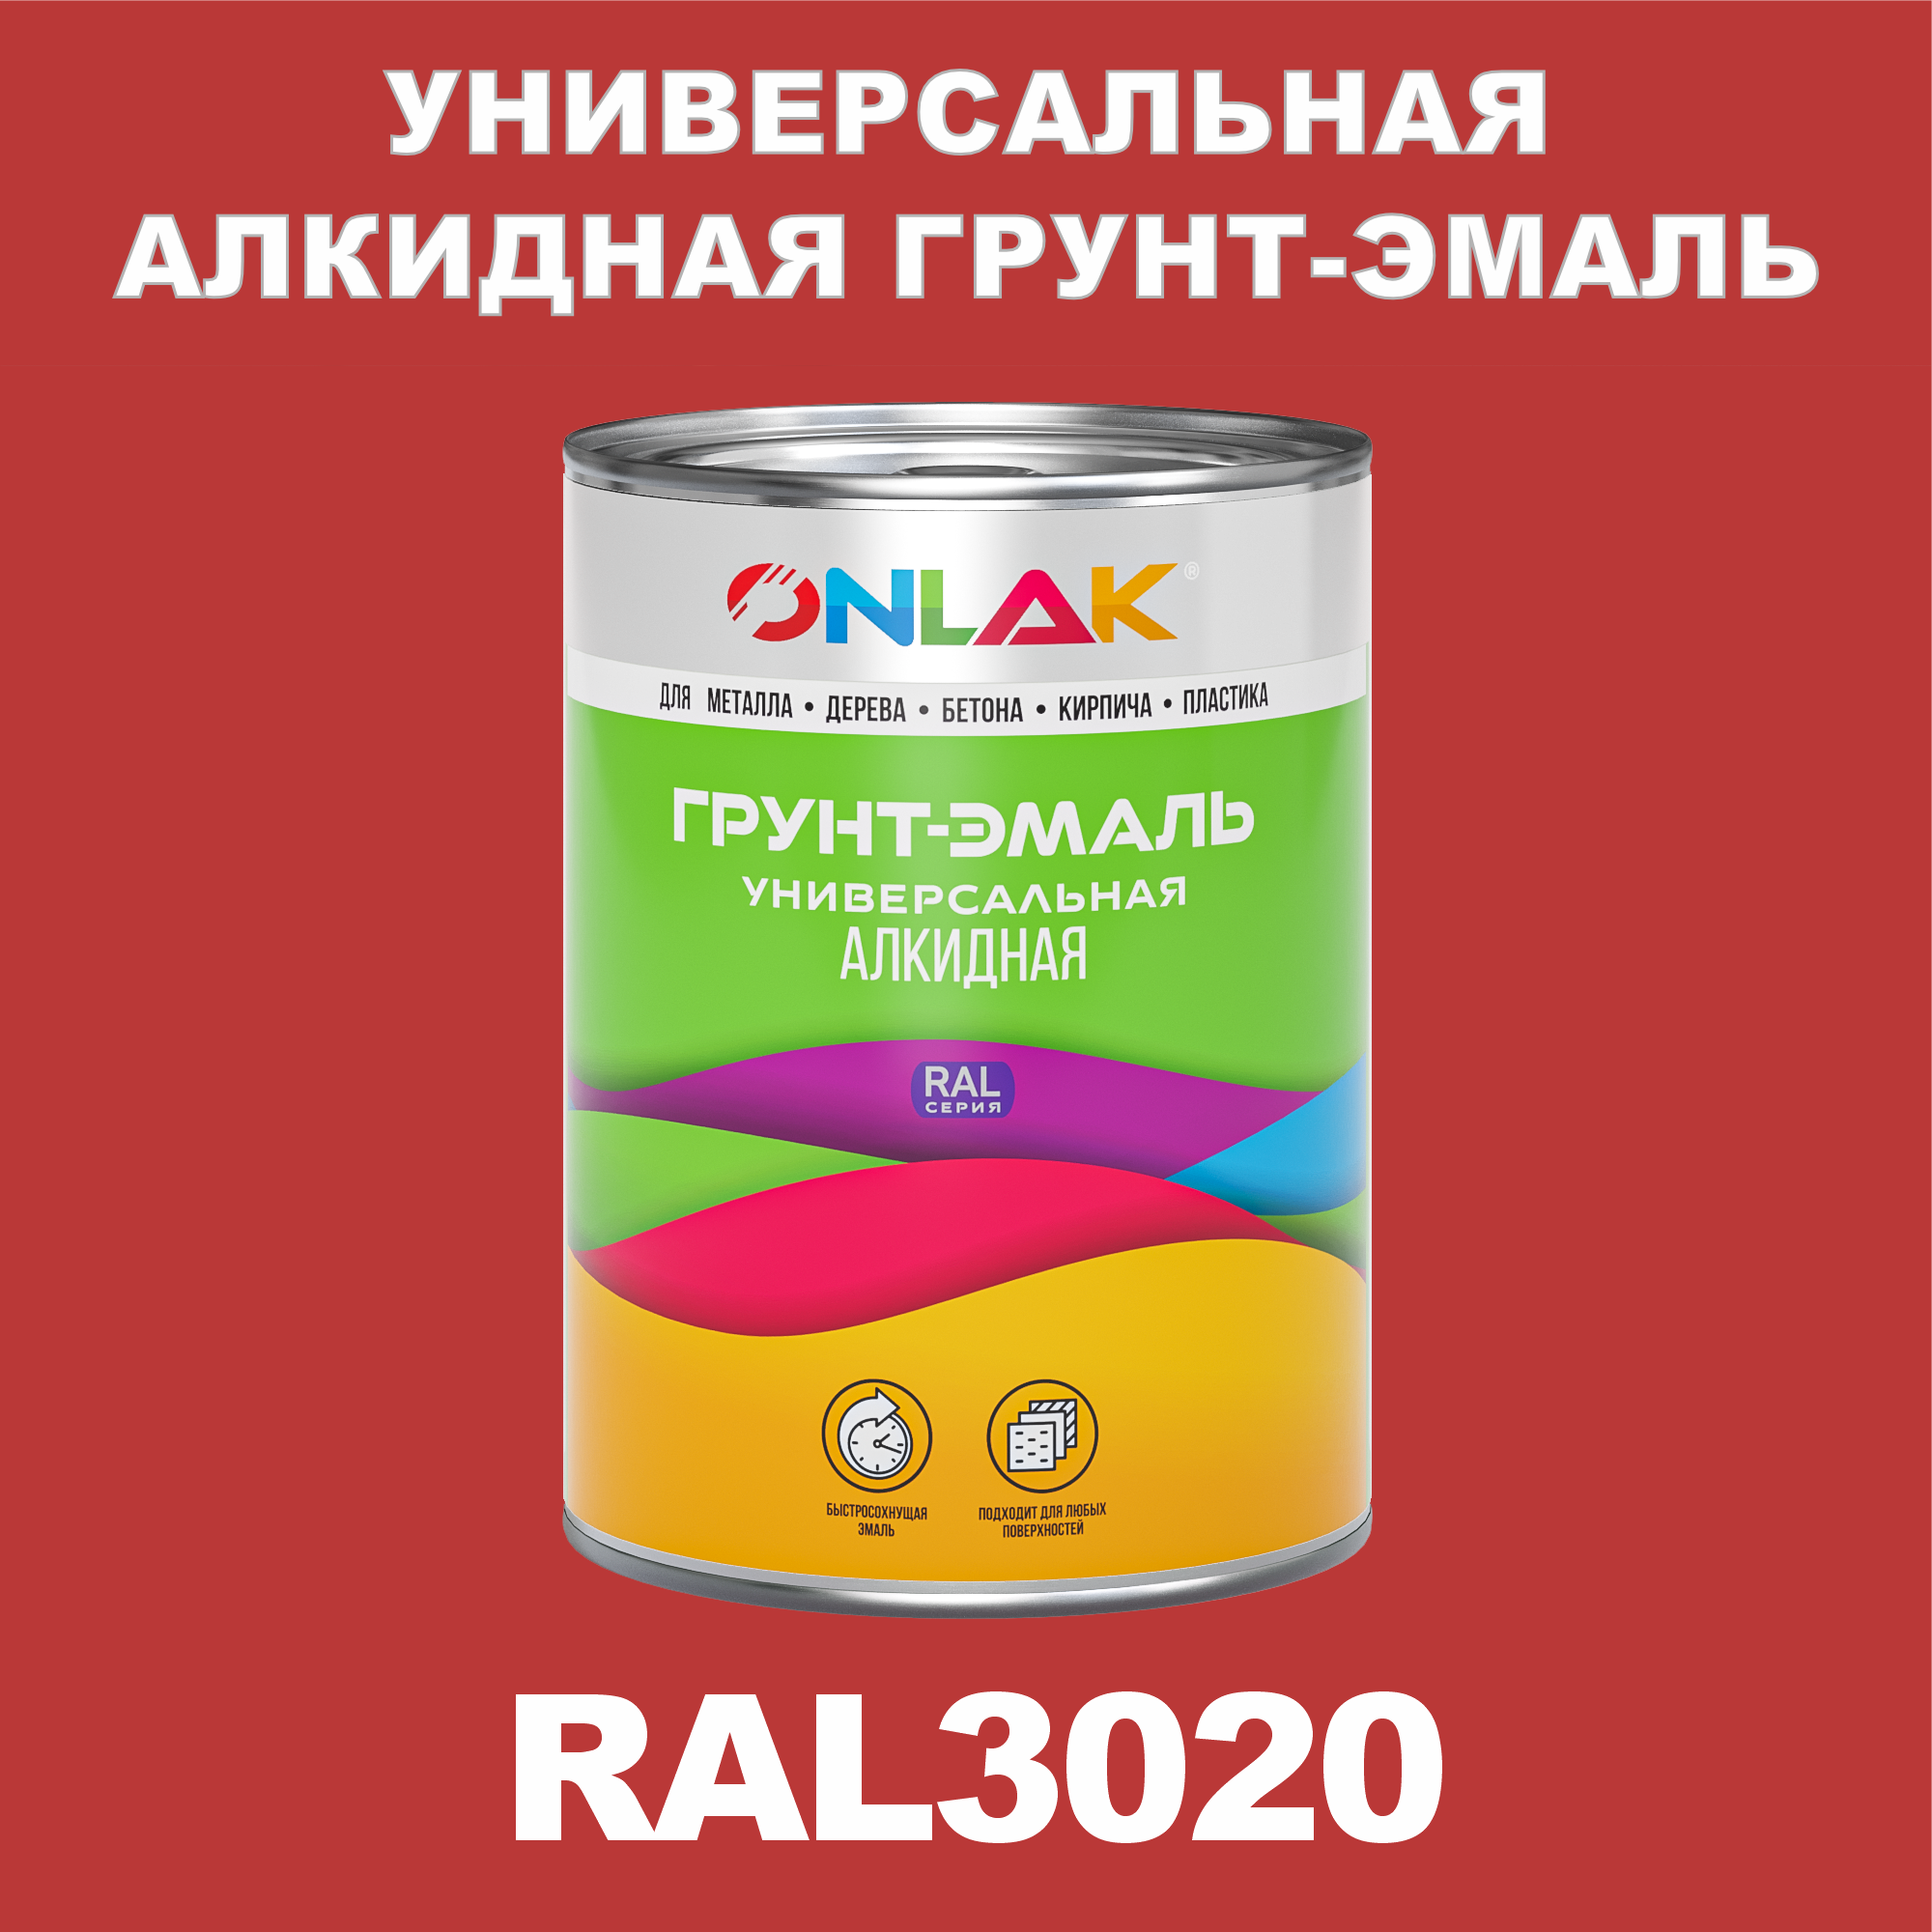 Грунт-эмаль ONLAK 1К RAL3020 антикоррозионная алкидная по металлу по ржавчине 1 кг